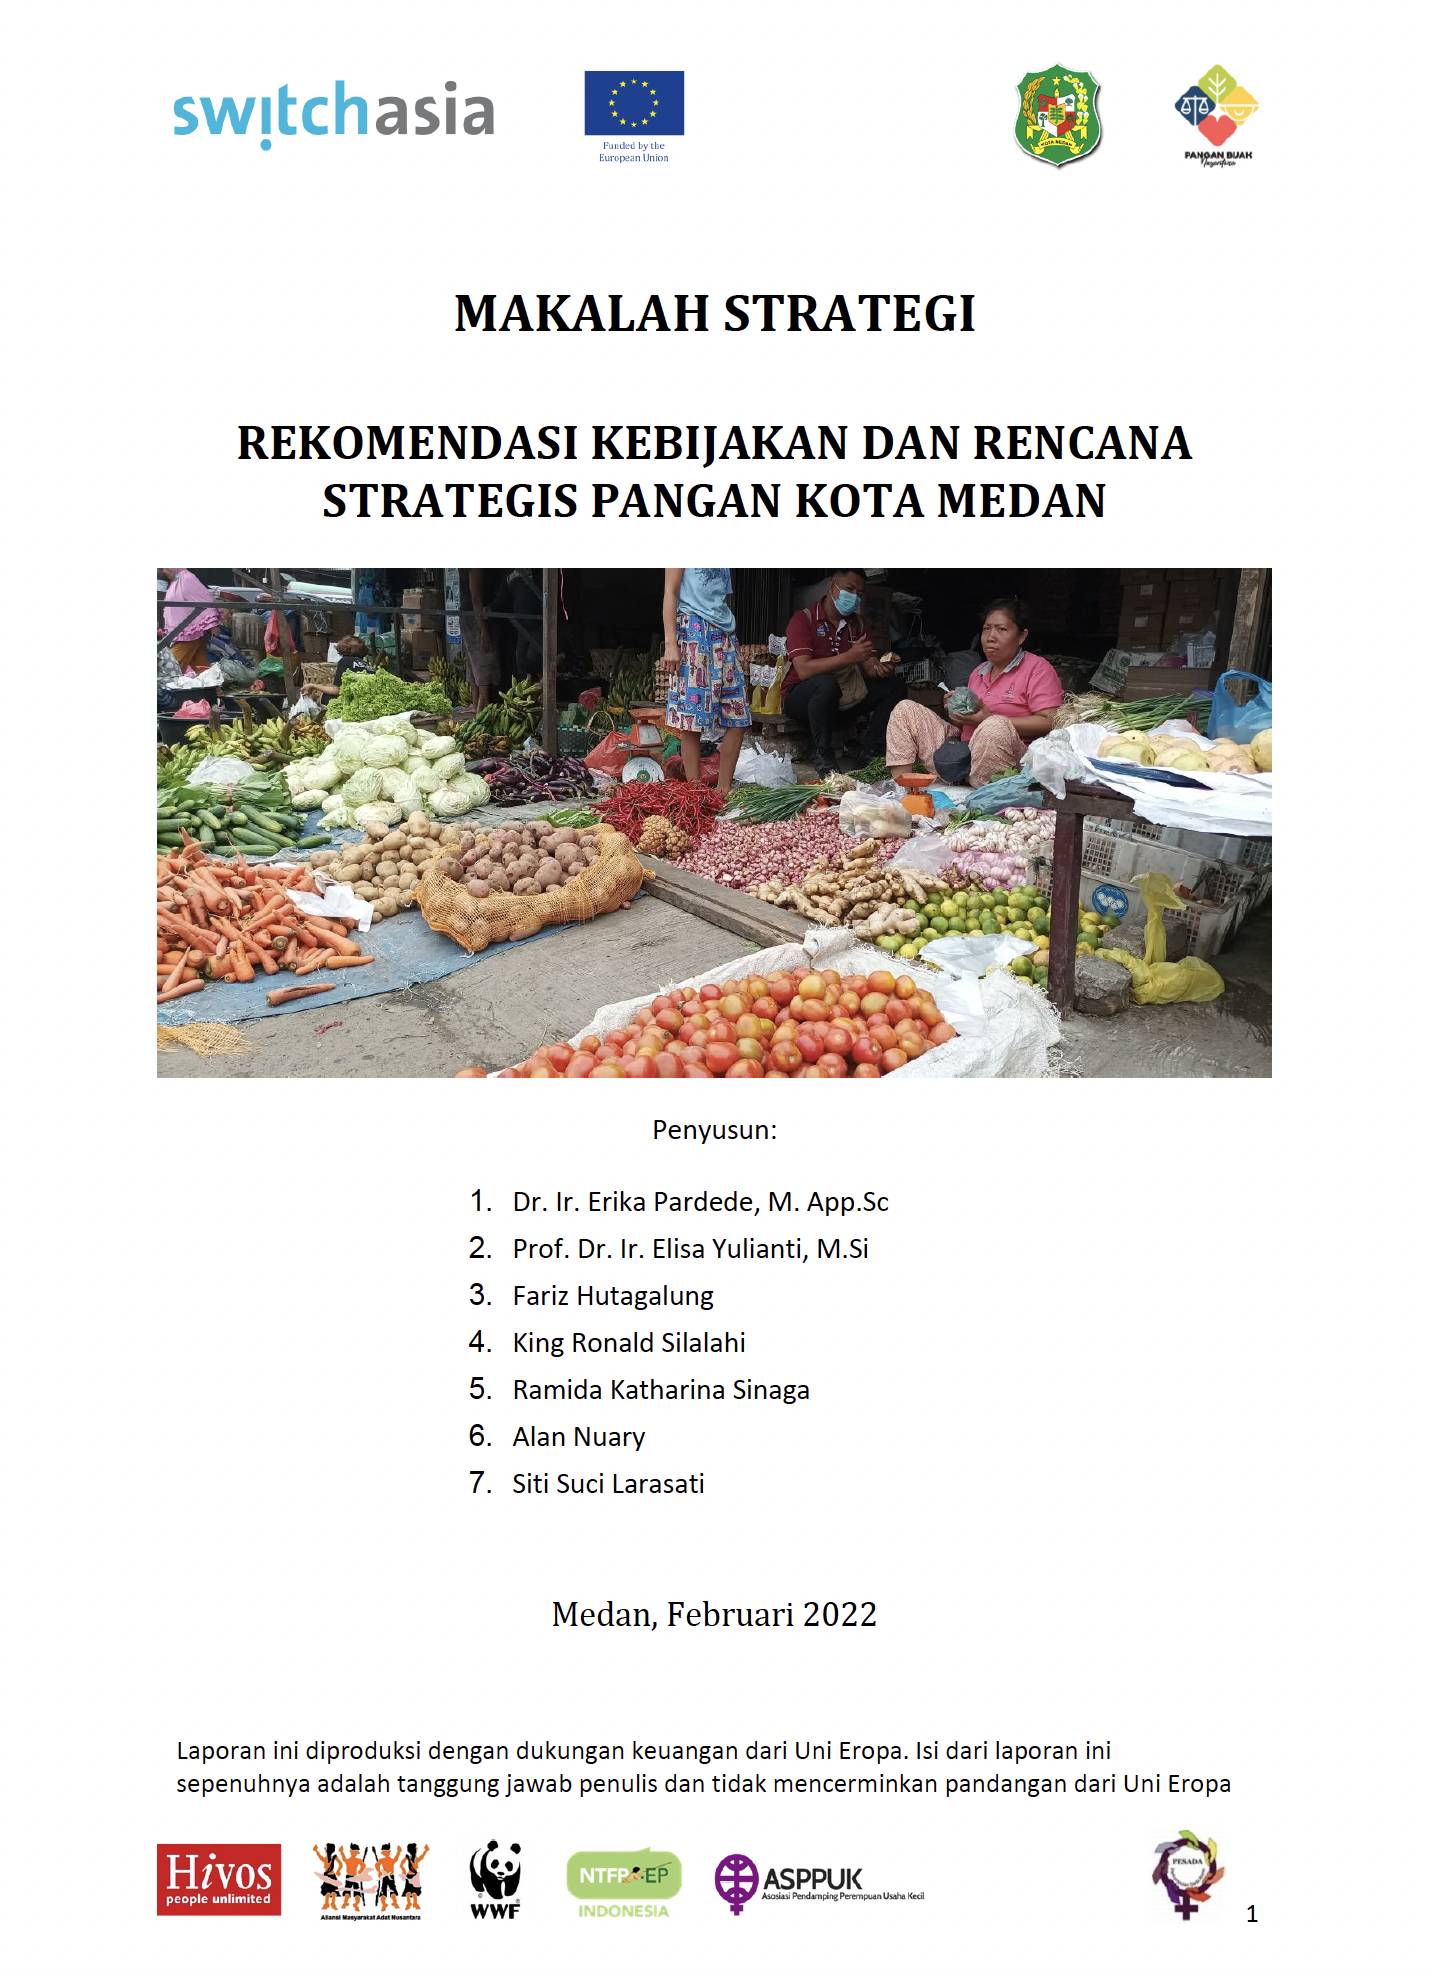 Makalah Strategi Sispang Kota Medan